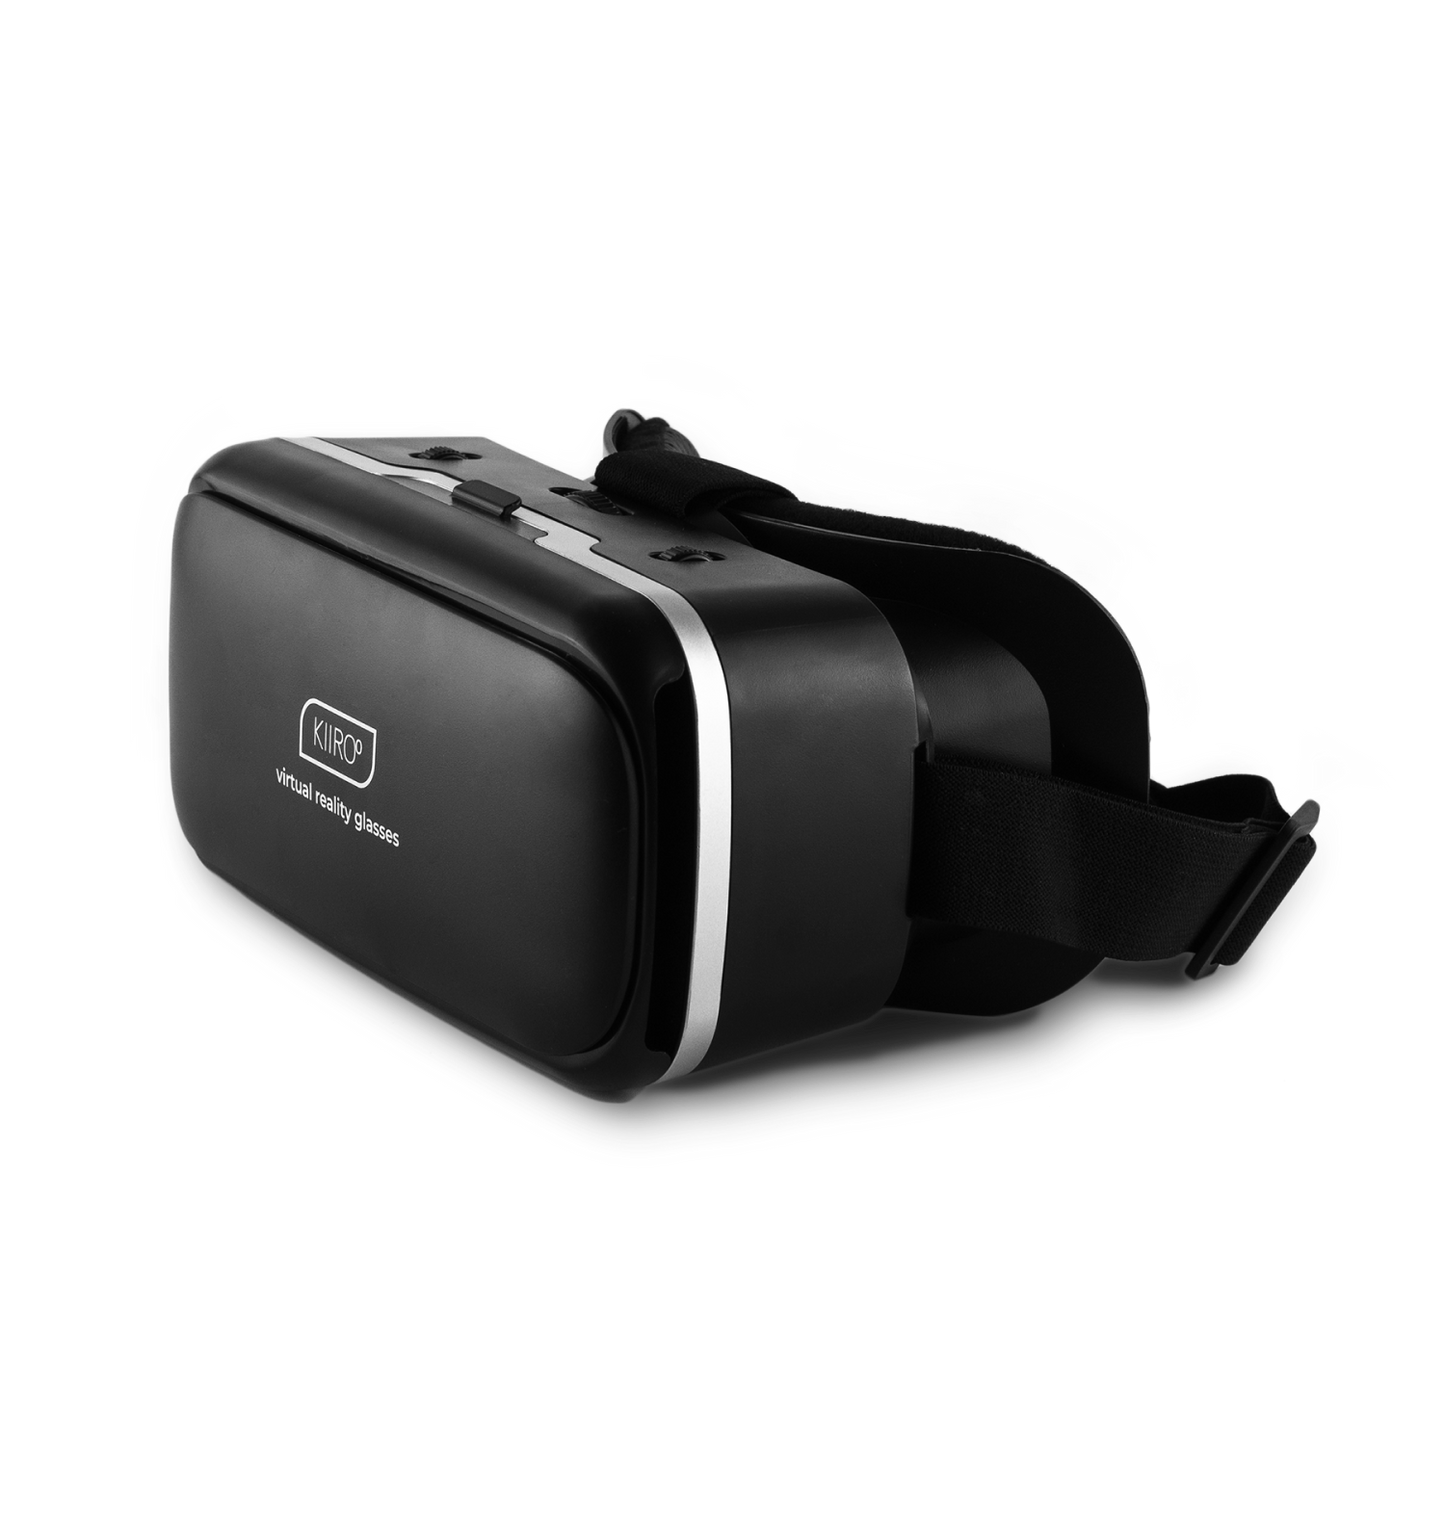 KIIROO Virtual Reality Headset